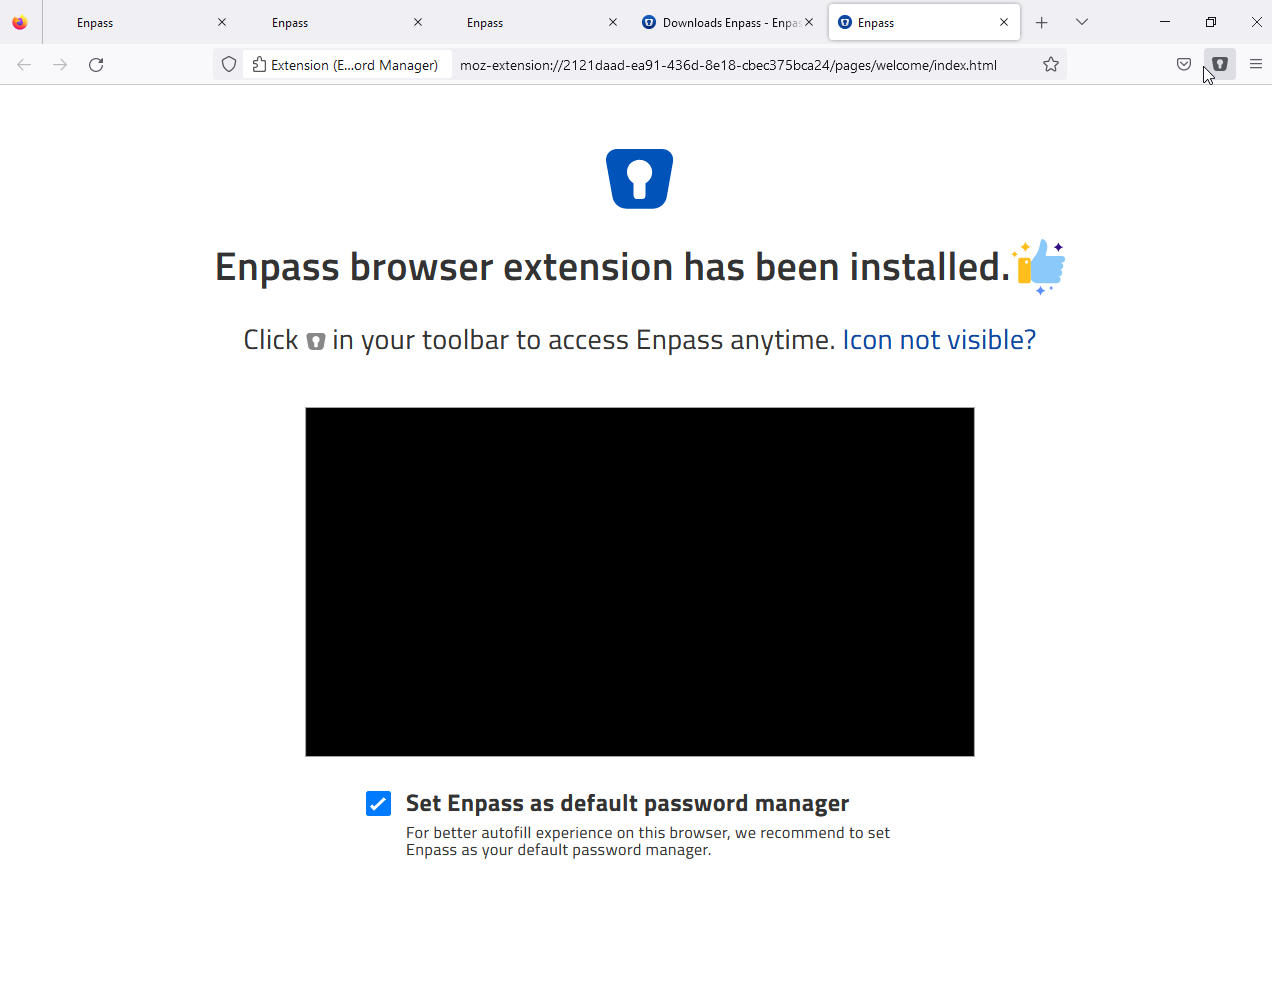 Enpass-Website-Broswer-Extension-Success